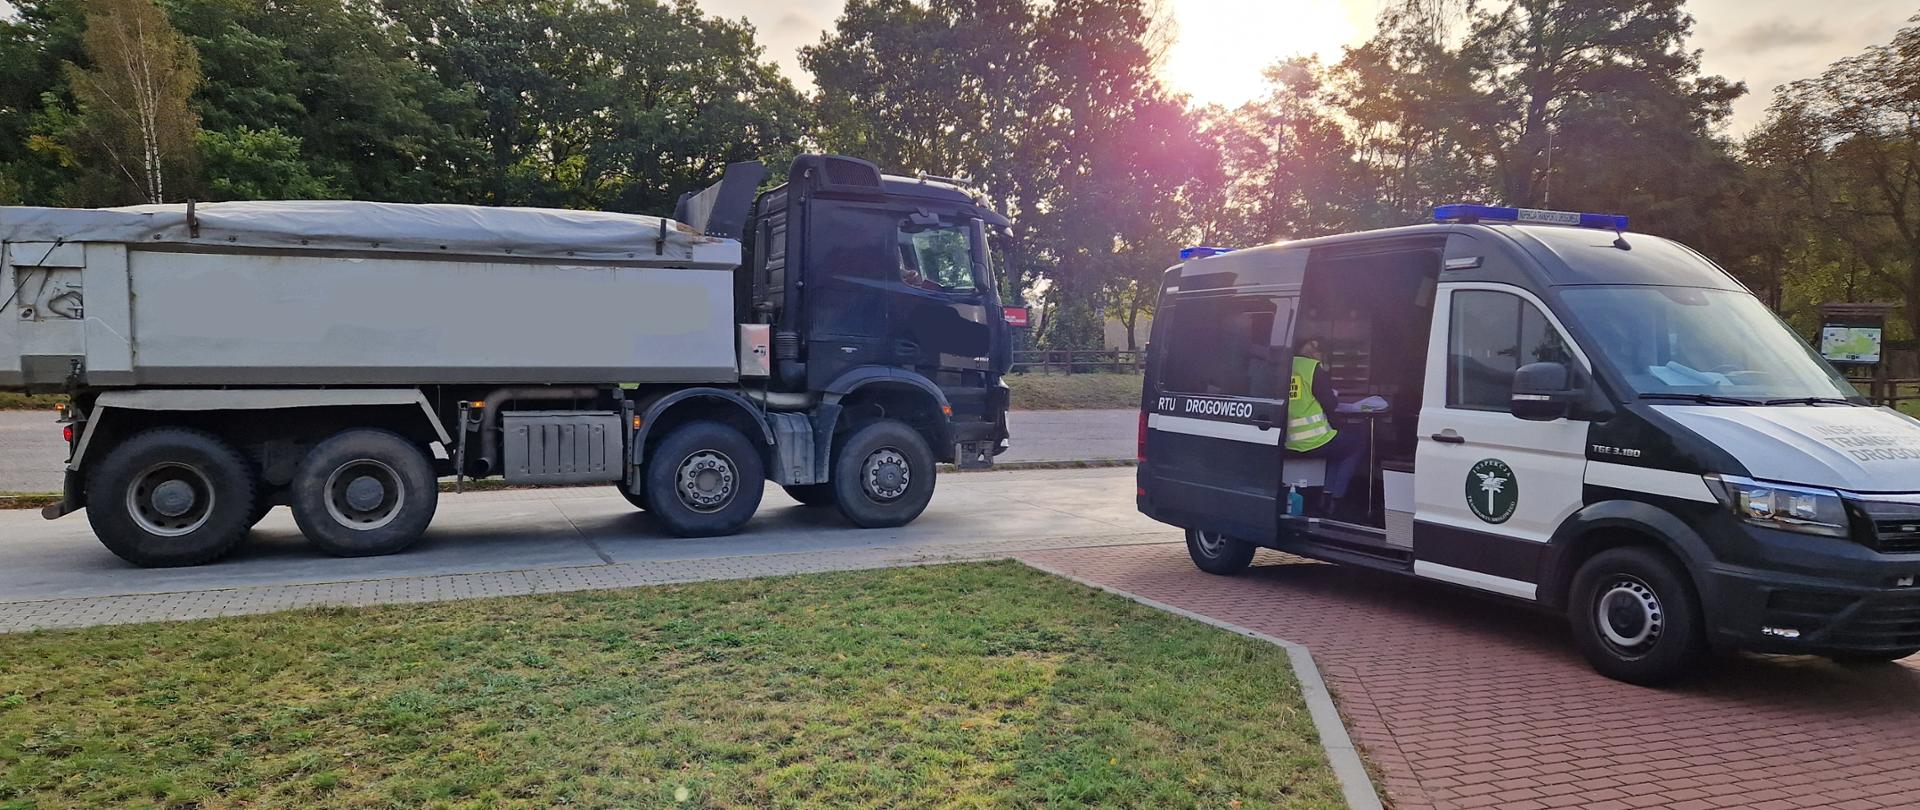 Zatrzymany pojazd ciężarowy podczas kontroli drogowej i stojący obok radiowóz Inspektoratu Transportu Drogowego.